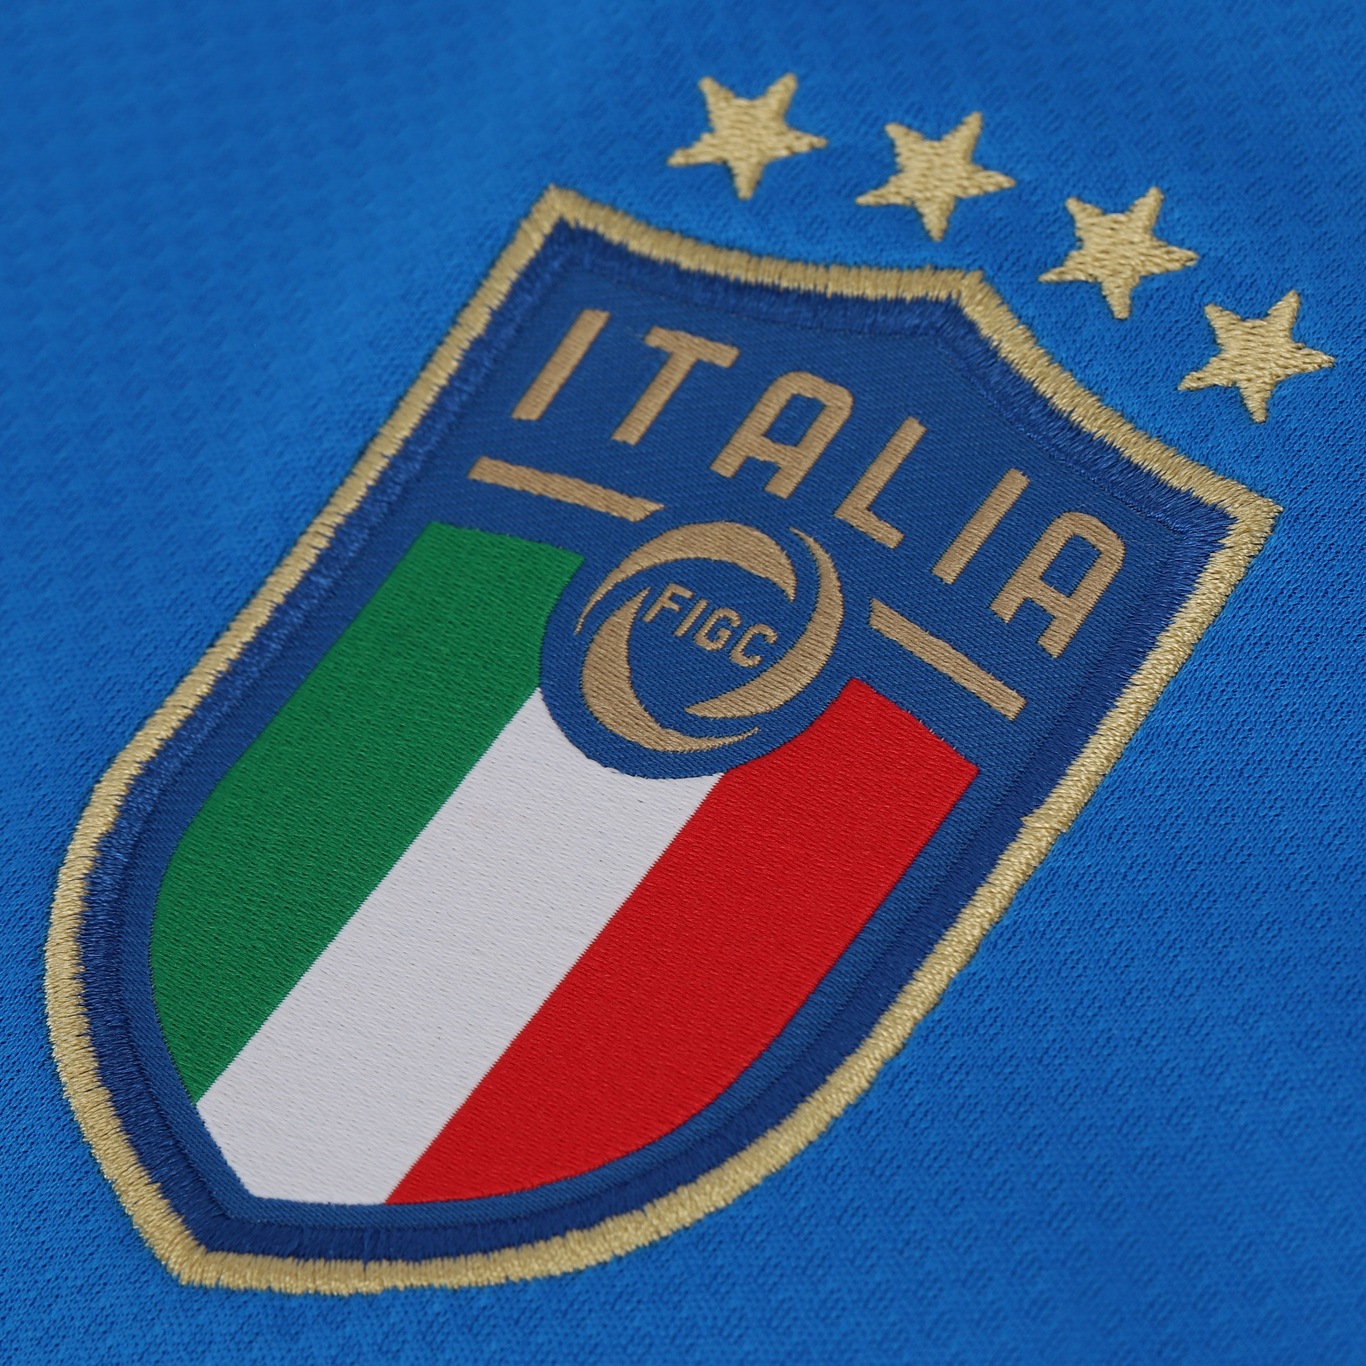 Camisetas PUMA de Italia (2003 → 2022)